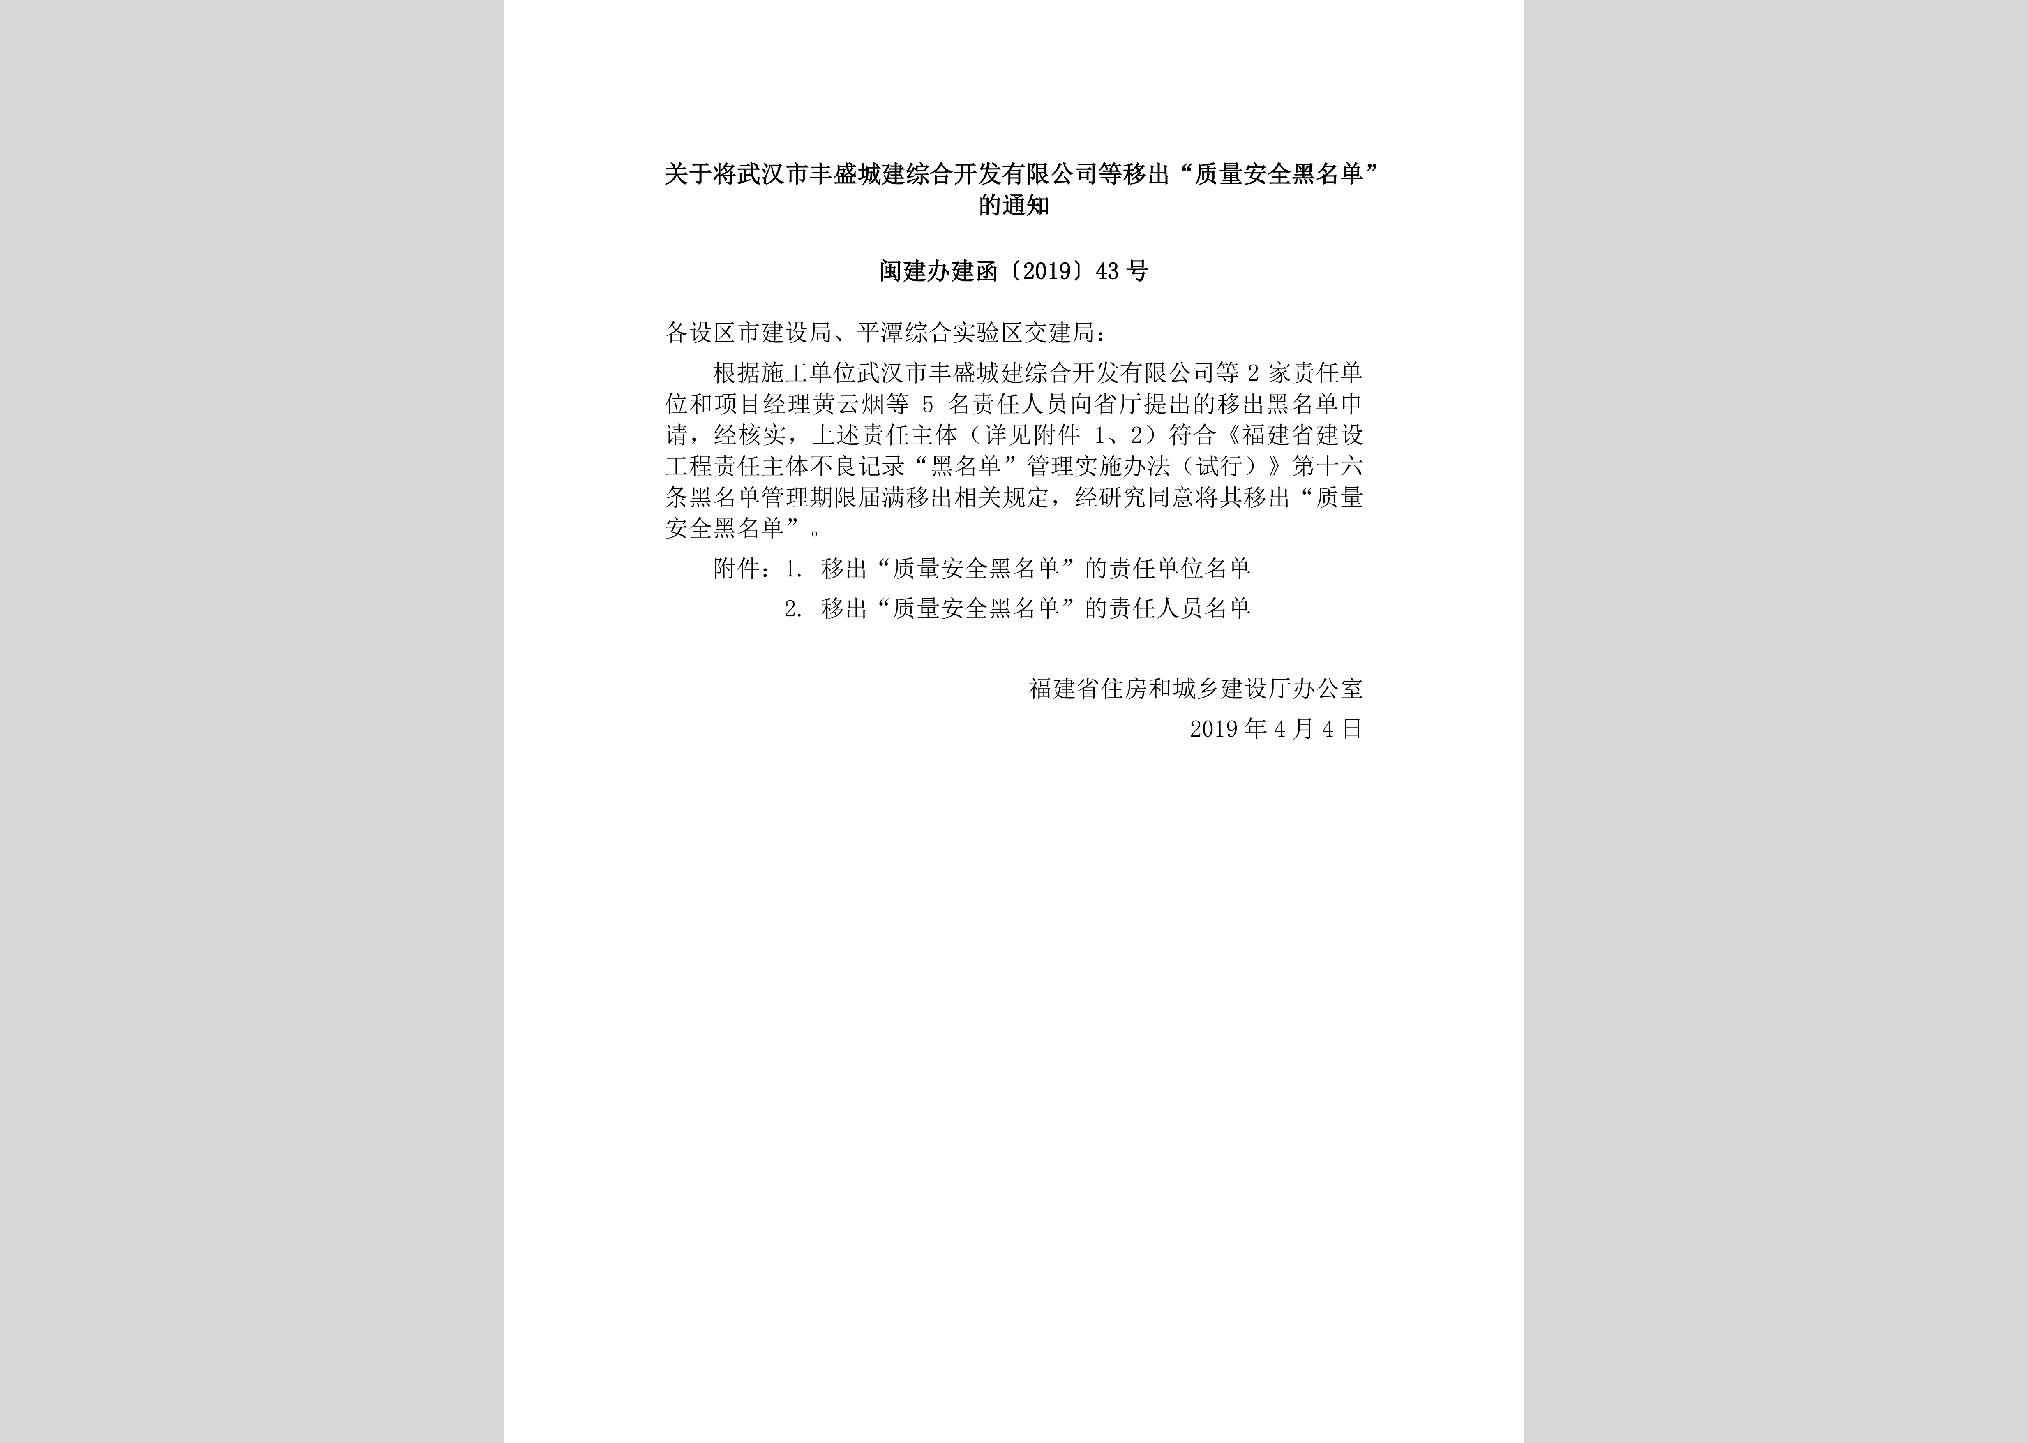 闽建办建函[2019]43号：关于将武汉市丰盛城建综合开发有限公司等移出“质量安全黑名单”的通知